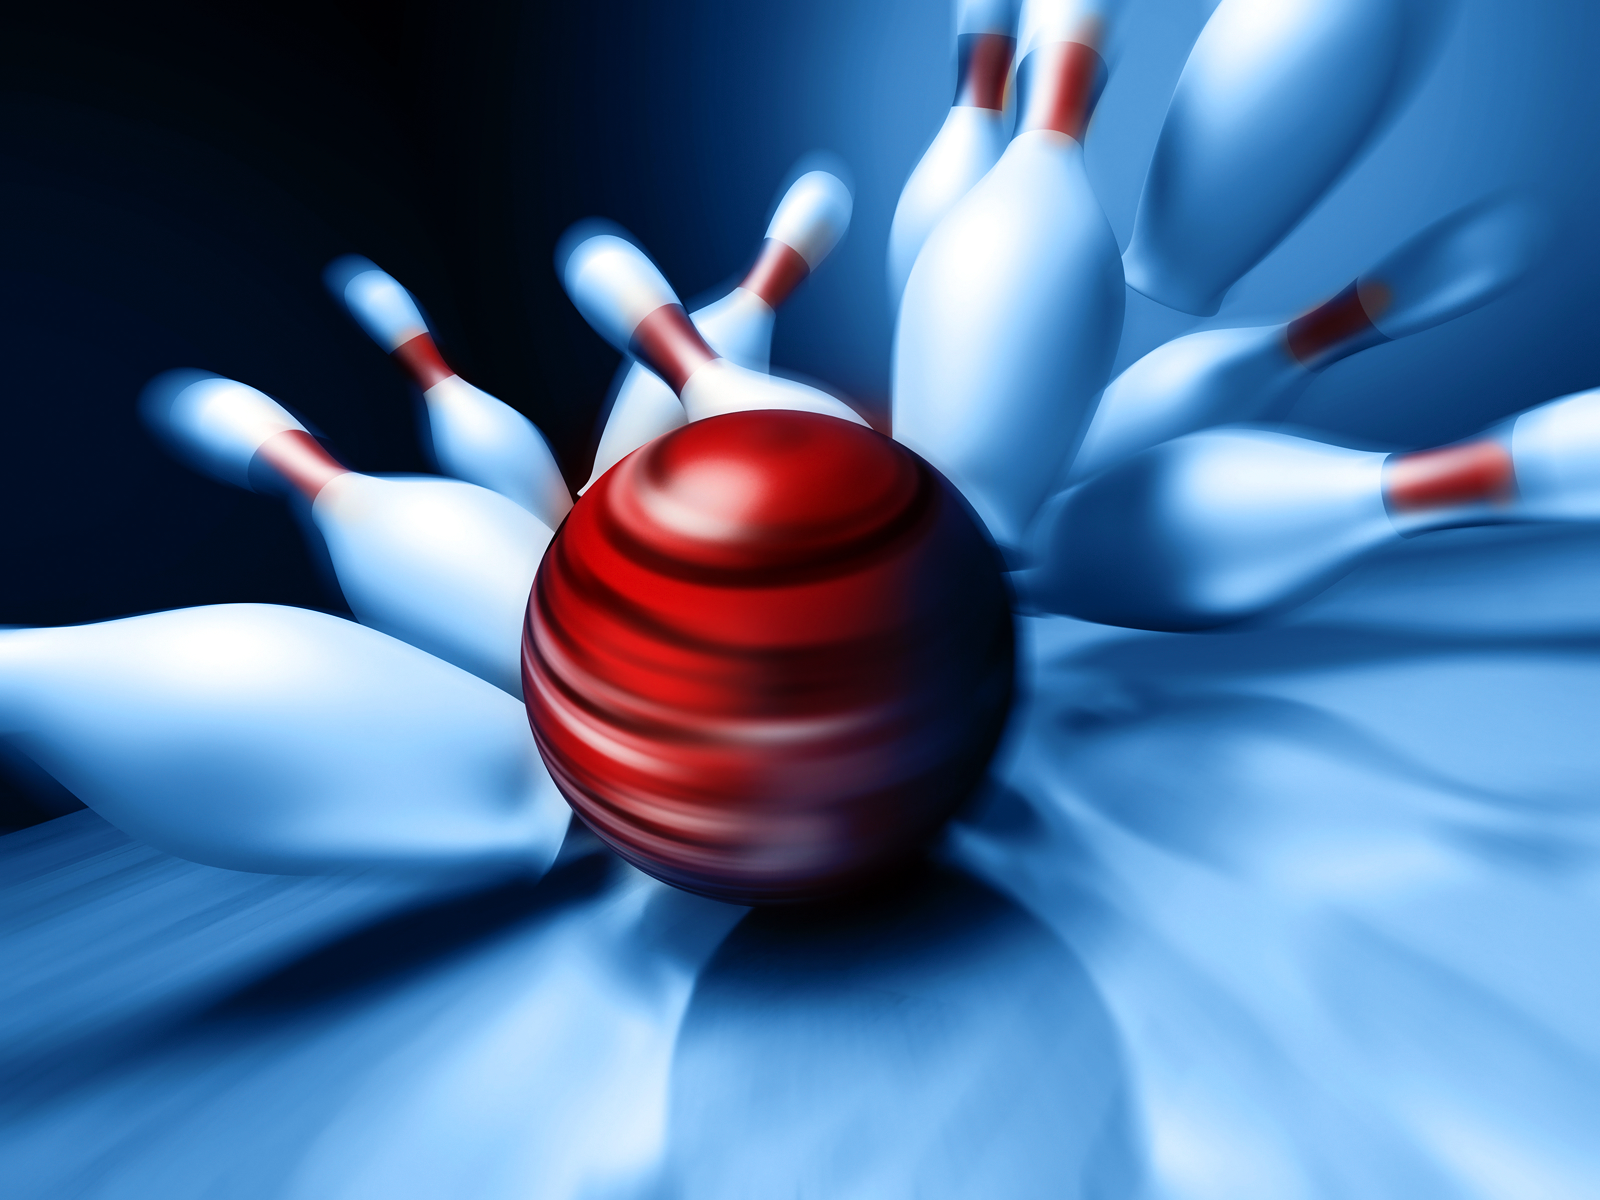 sporttapete für wände,bowling,rot,bowling mit zehn kegeln,bowlingausrüstung,hand